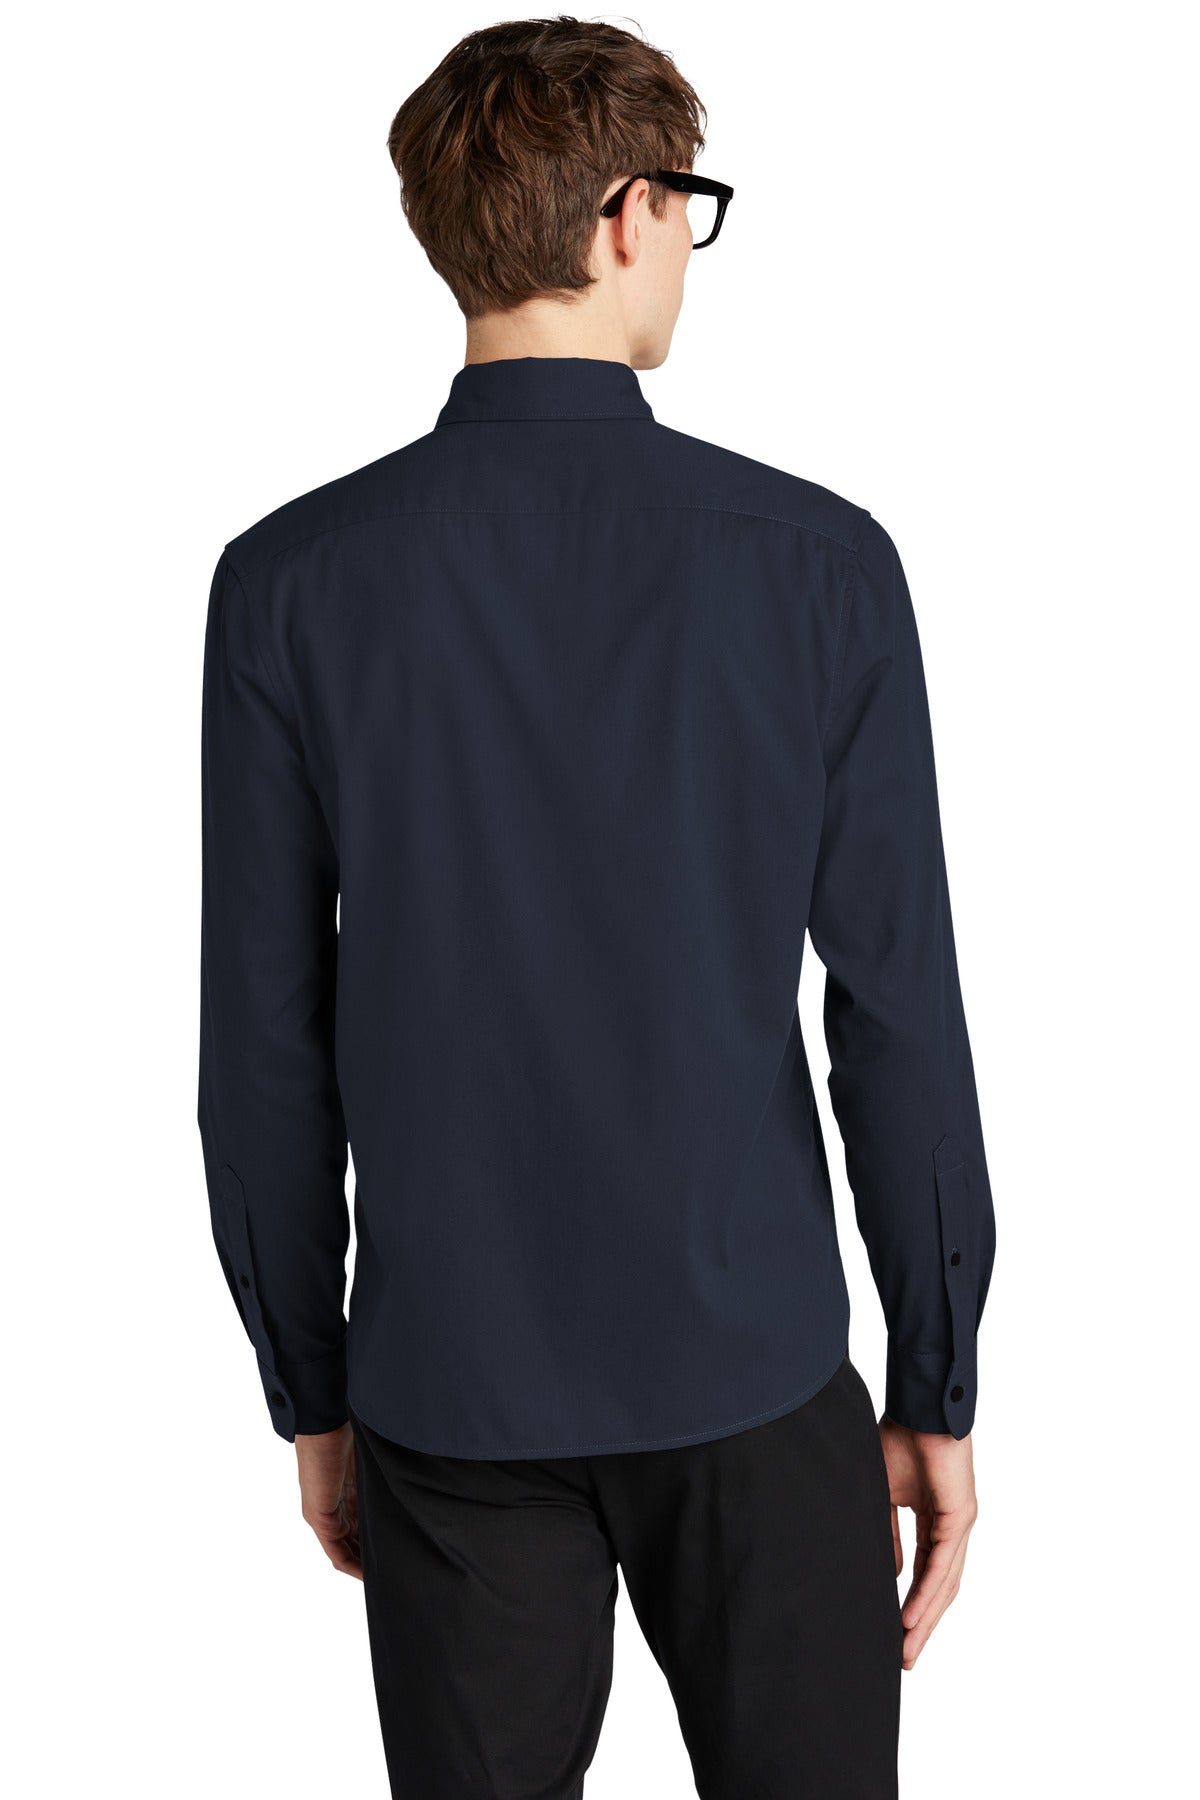 Mercer+Mettle Long Sleeve Stretch Woven Shirt MM2000